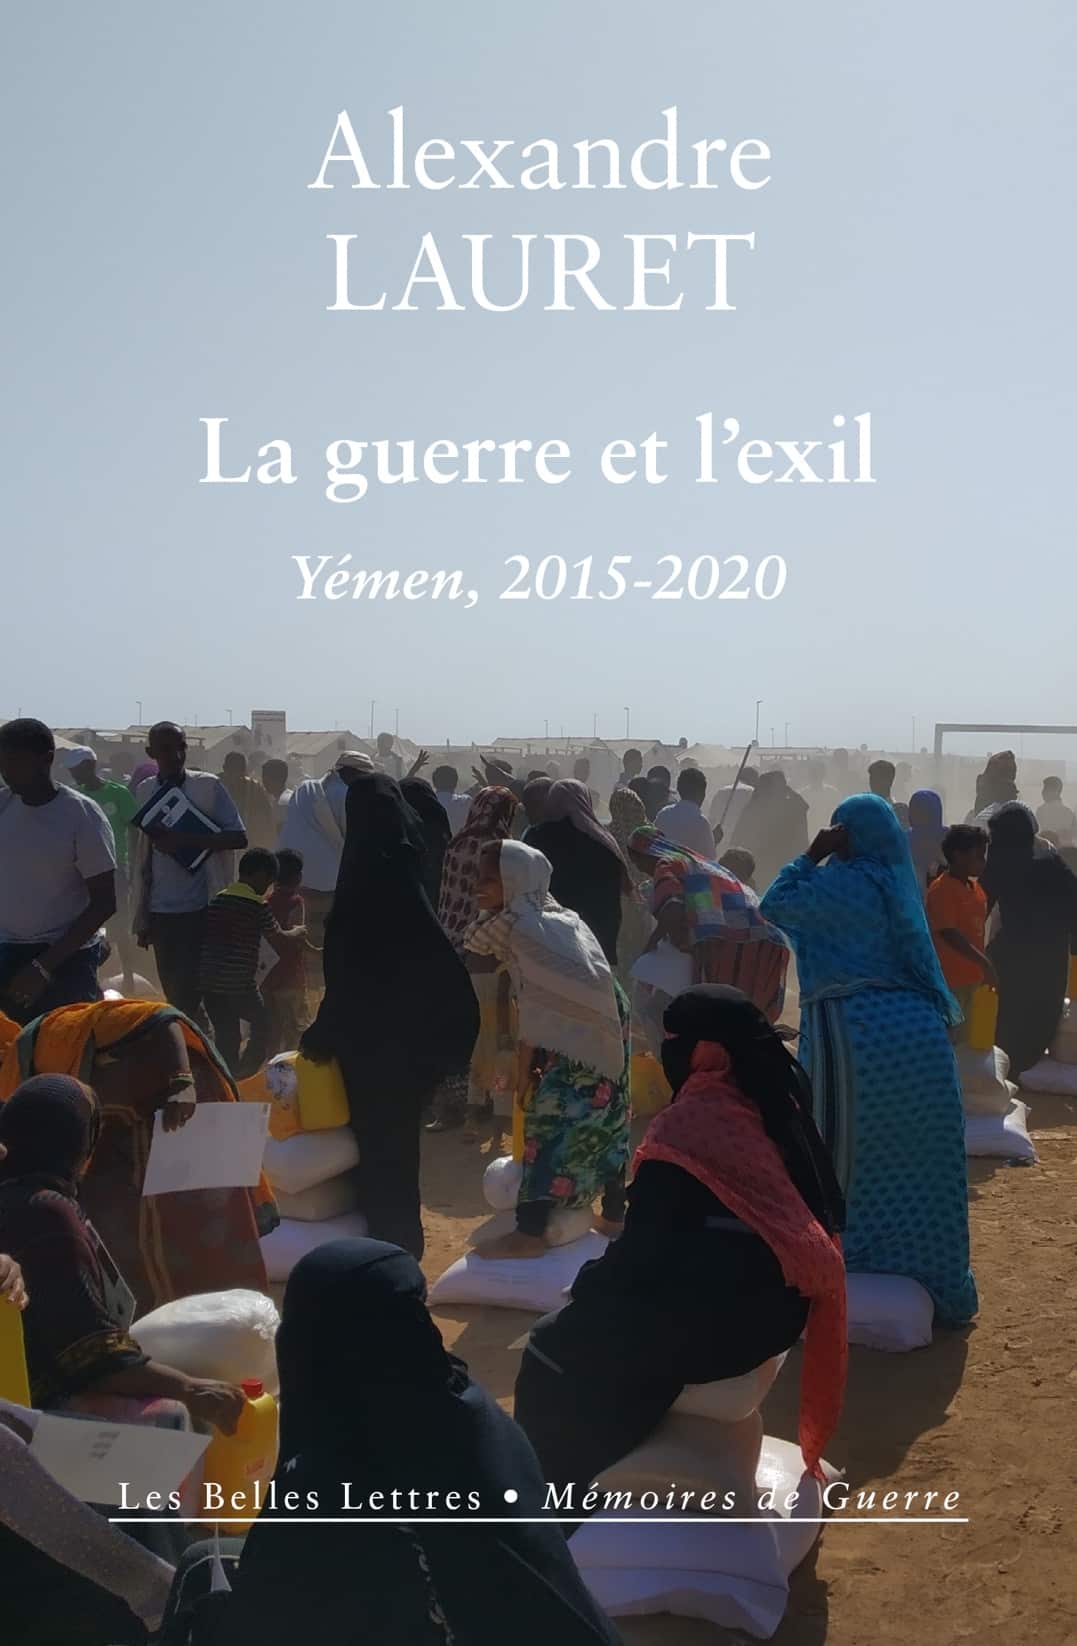 Couverture de "La guerre et l’exil. Yémen, 2015-2020", de Alexandre Lauret © Les Belles Lettres